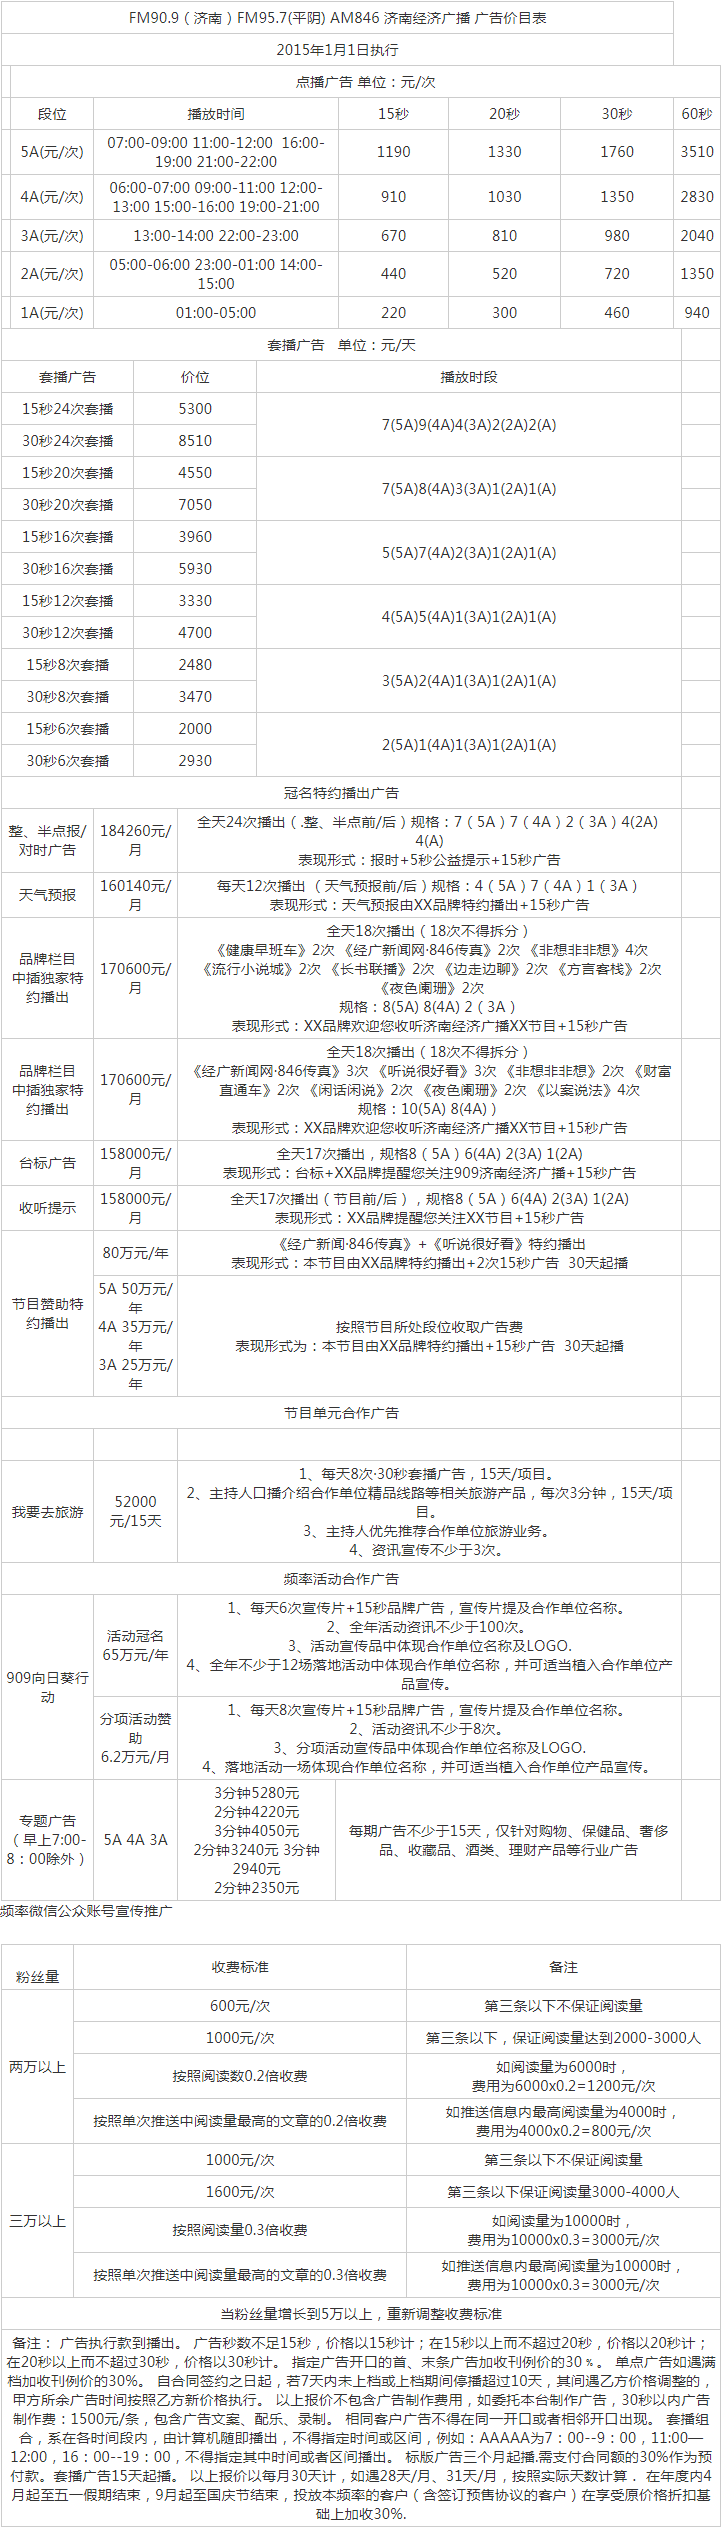 2015济南人民广播电台经济广播FM90.9 AM846广告报价表.png